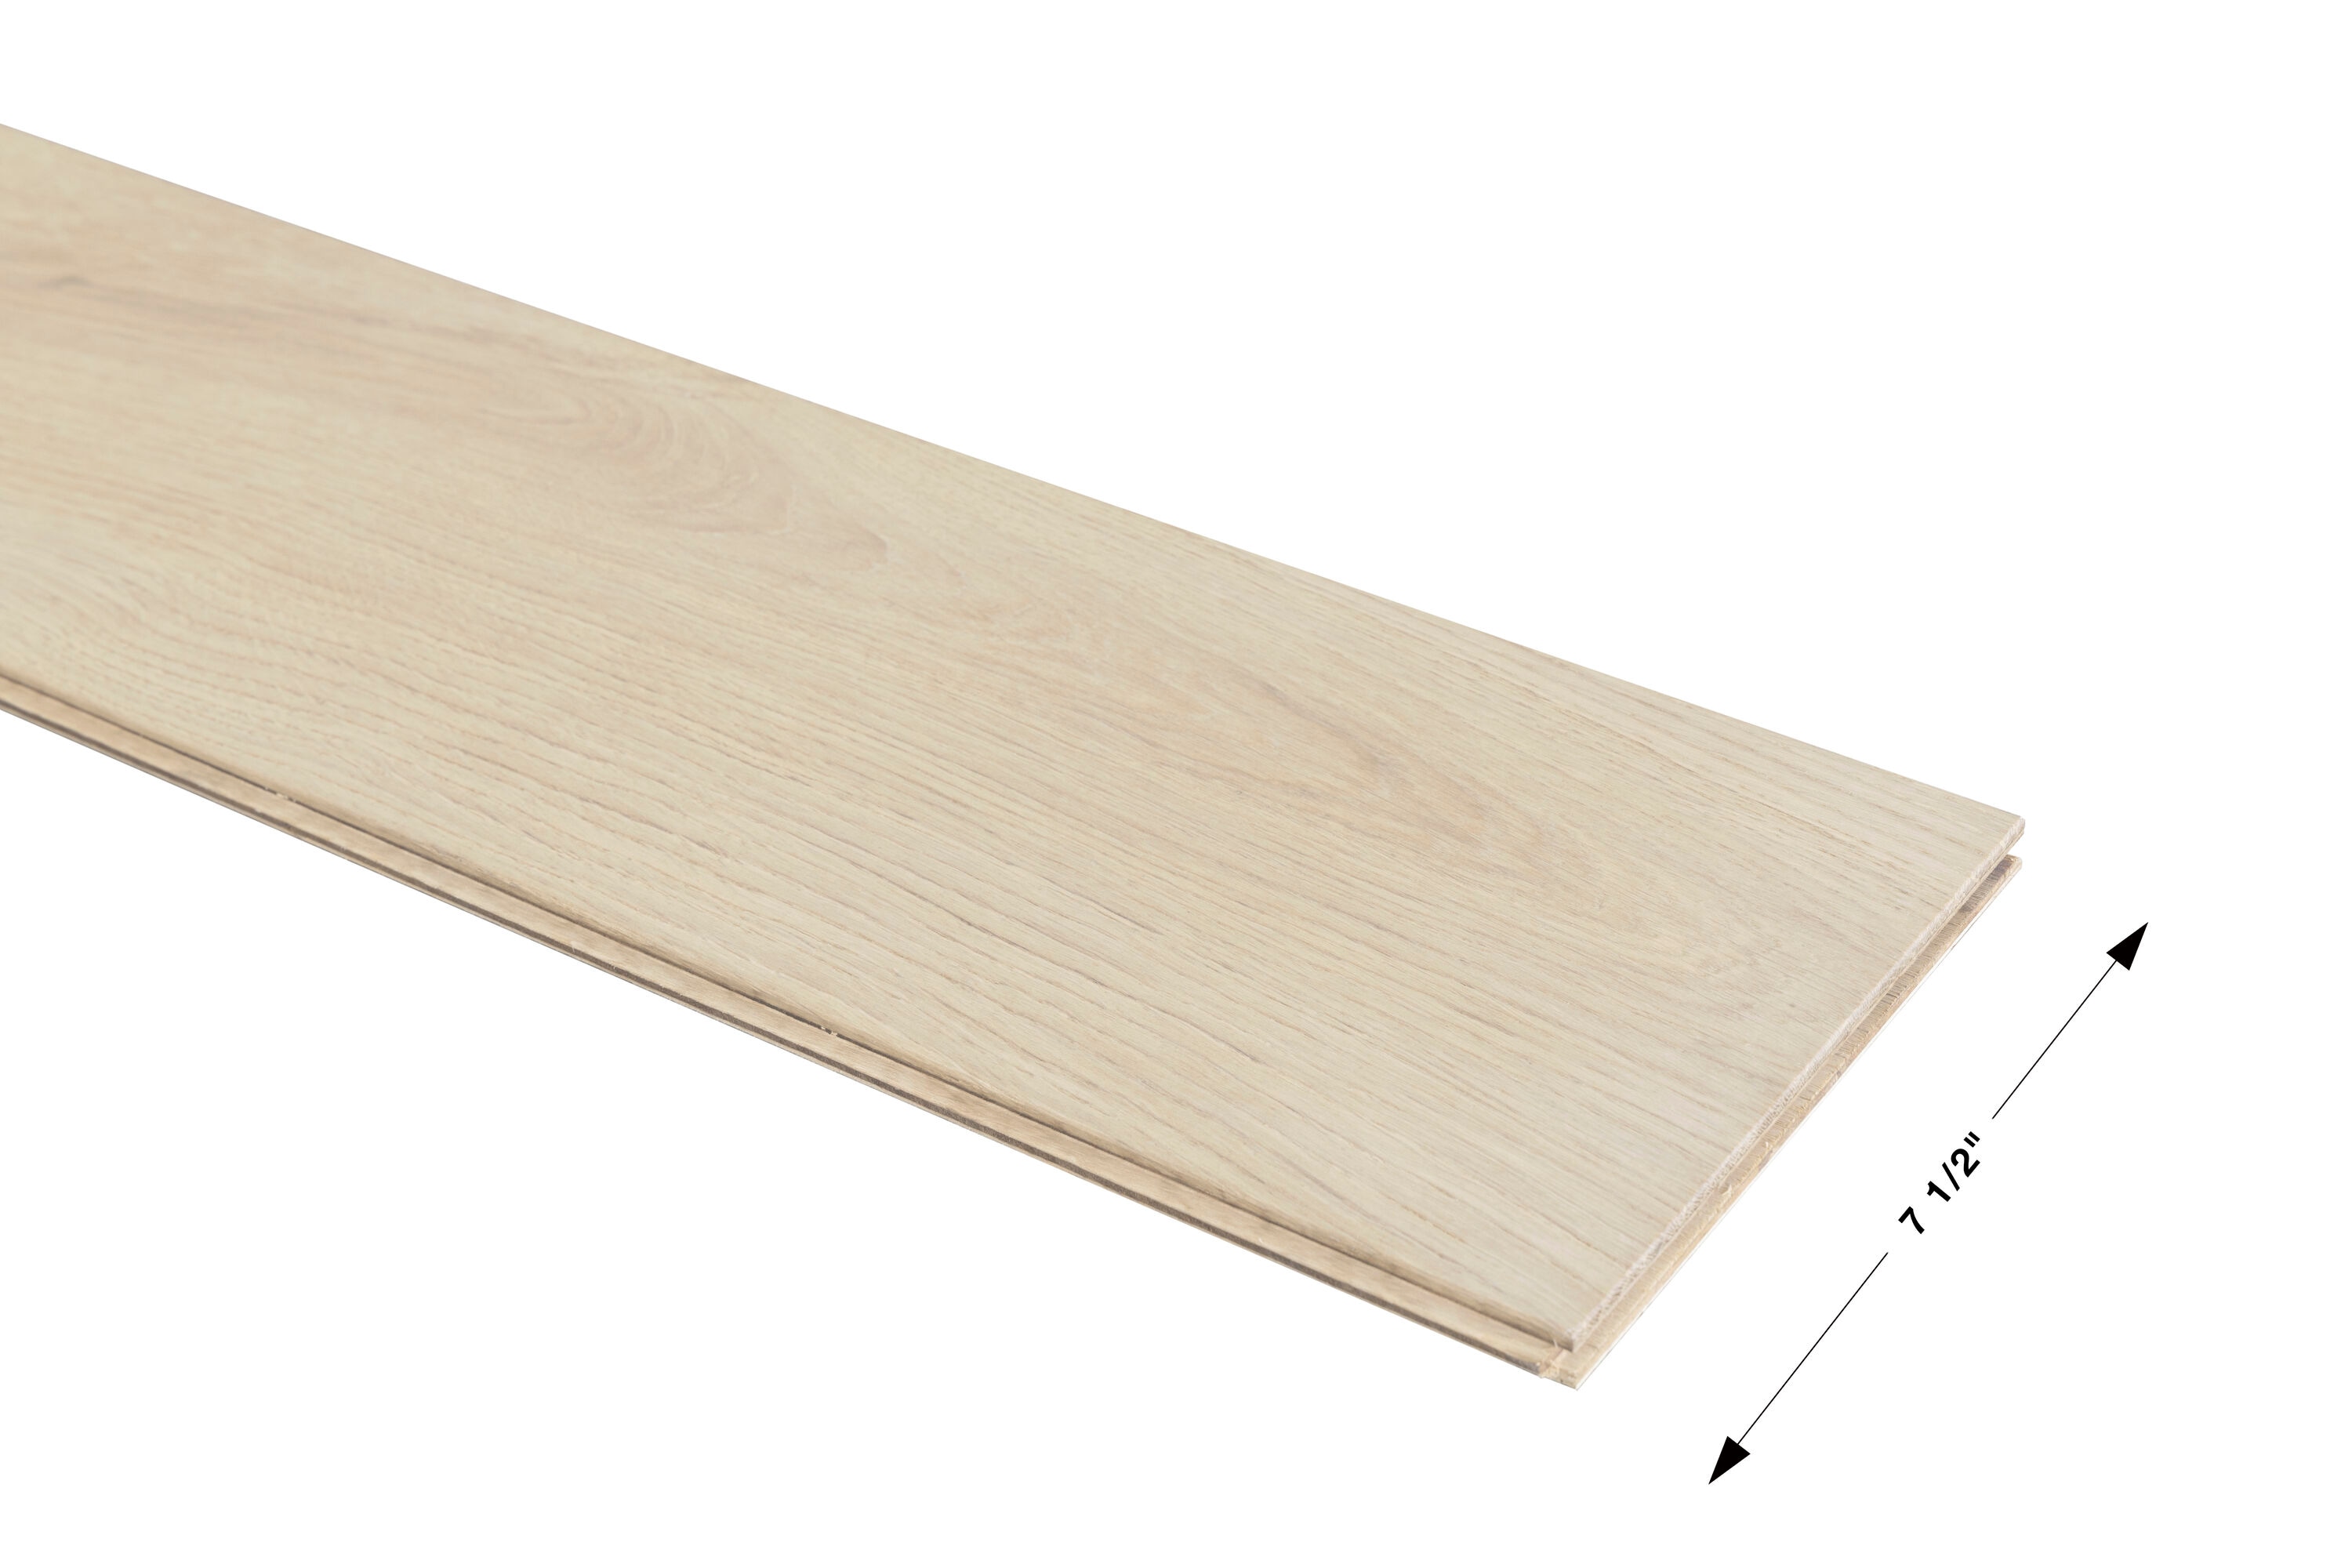 1/16 x 3 x 24 Mahogany Wood Sheets – National Balsa